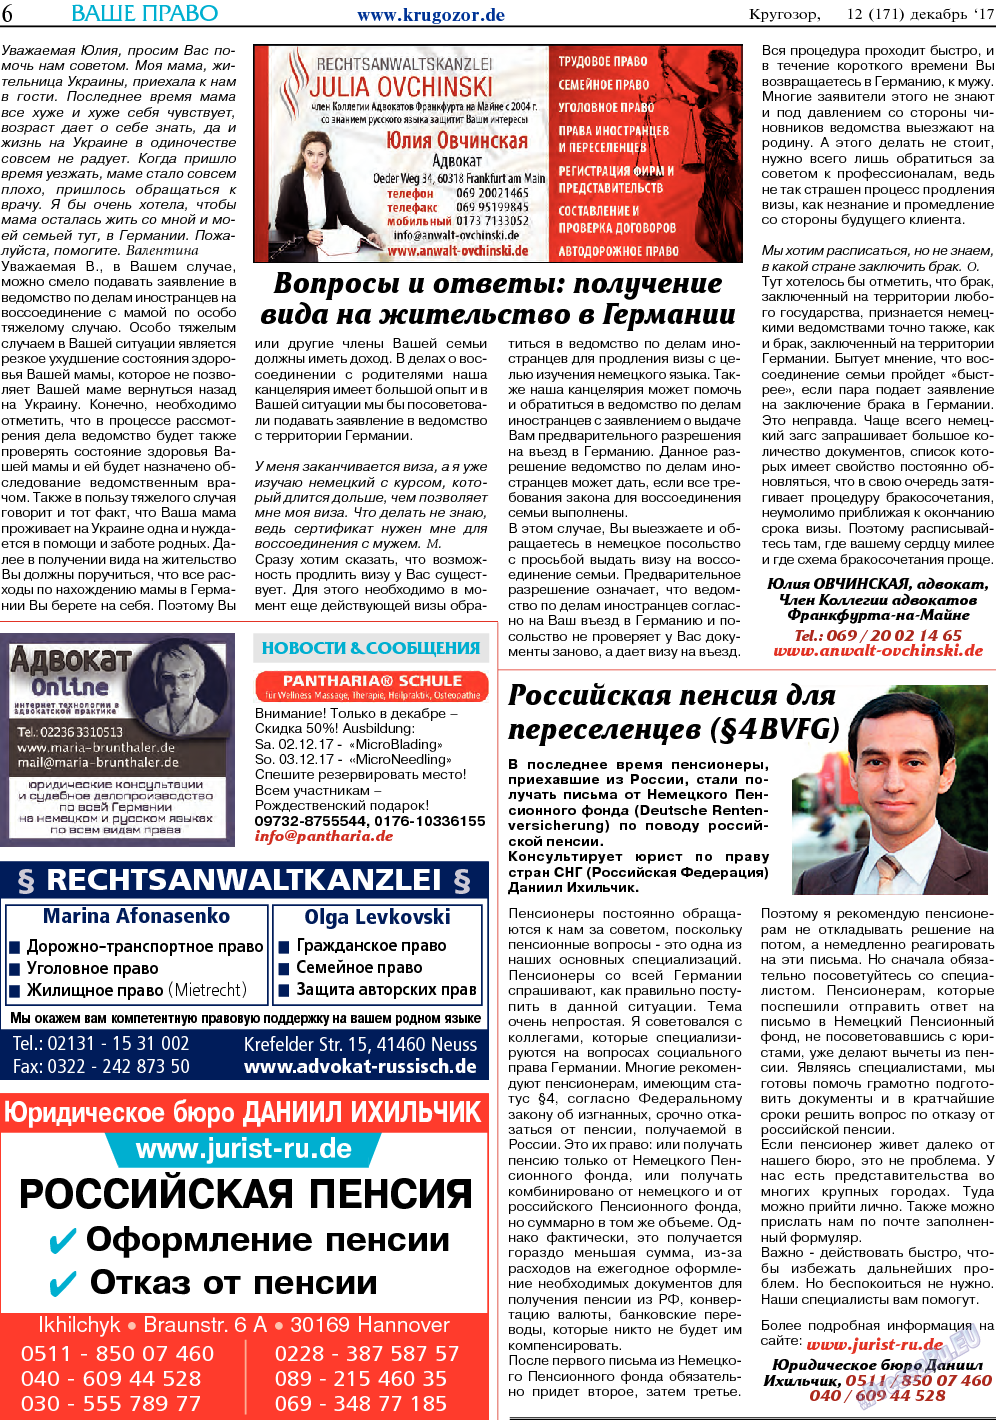 Кругозор (газета). 2017 год, номер 12, стр. 6